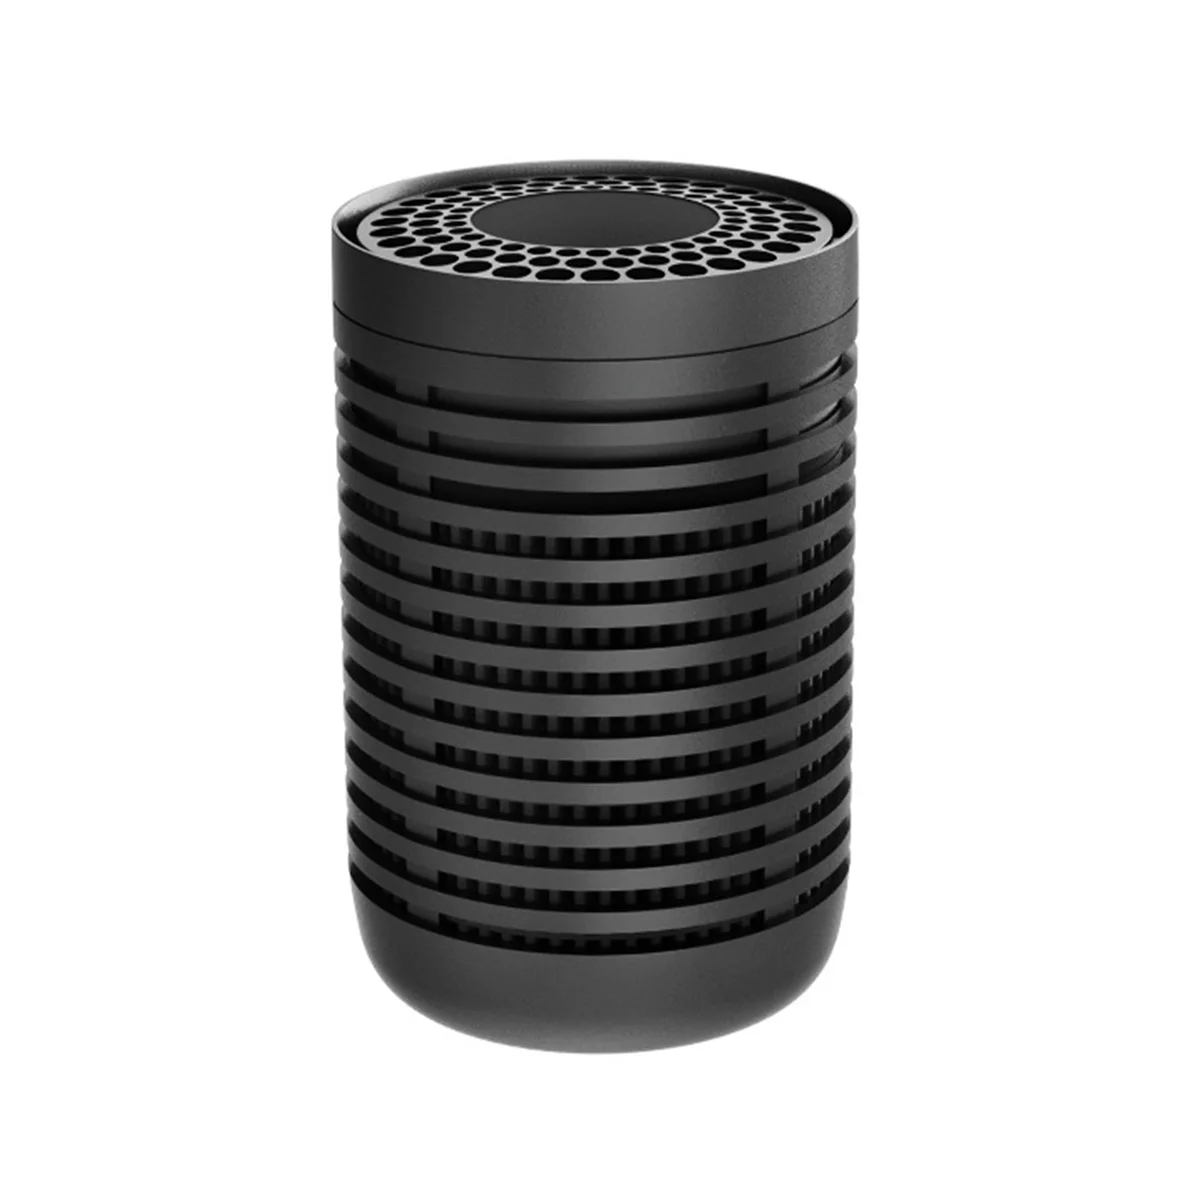 

Car Air Purifier, Air Purifier for Car with H13 True HEPA Filter for Smoke, Dust, Mini Portable Air Purifier Black